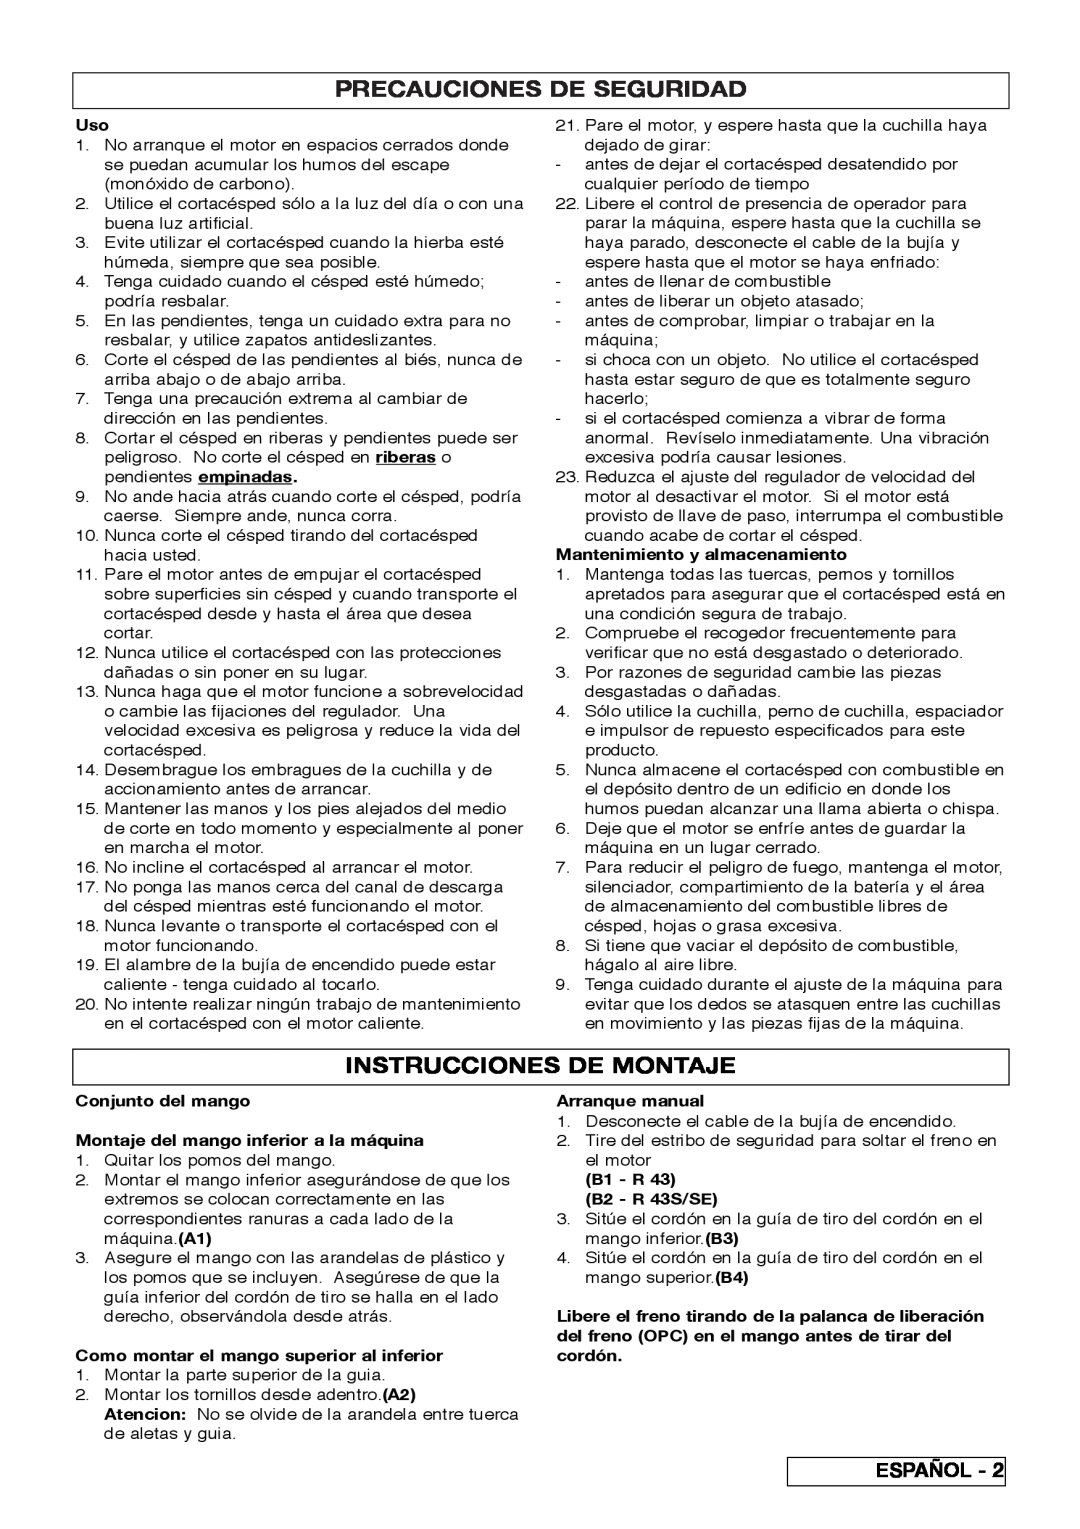 Husqvarna R 43SE manual Precauciones De Seguridad, Instrucciones De Montaje 